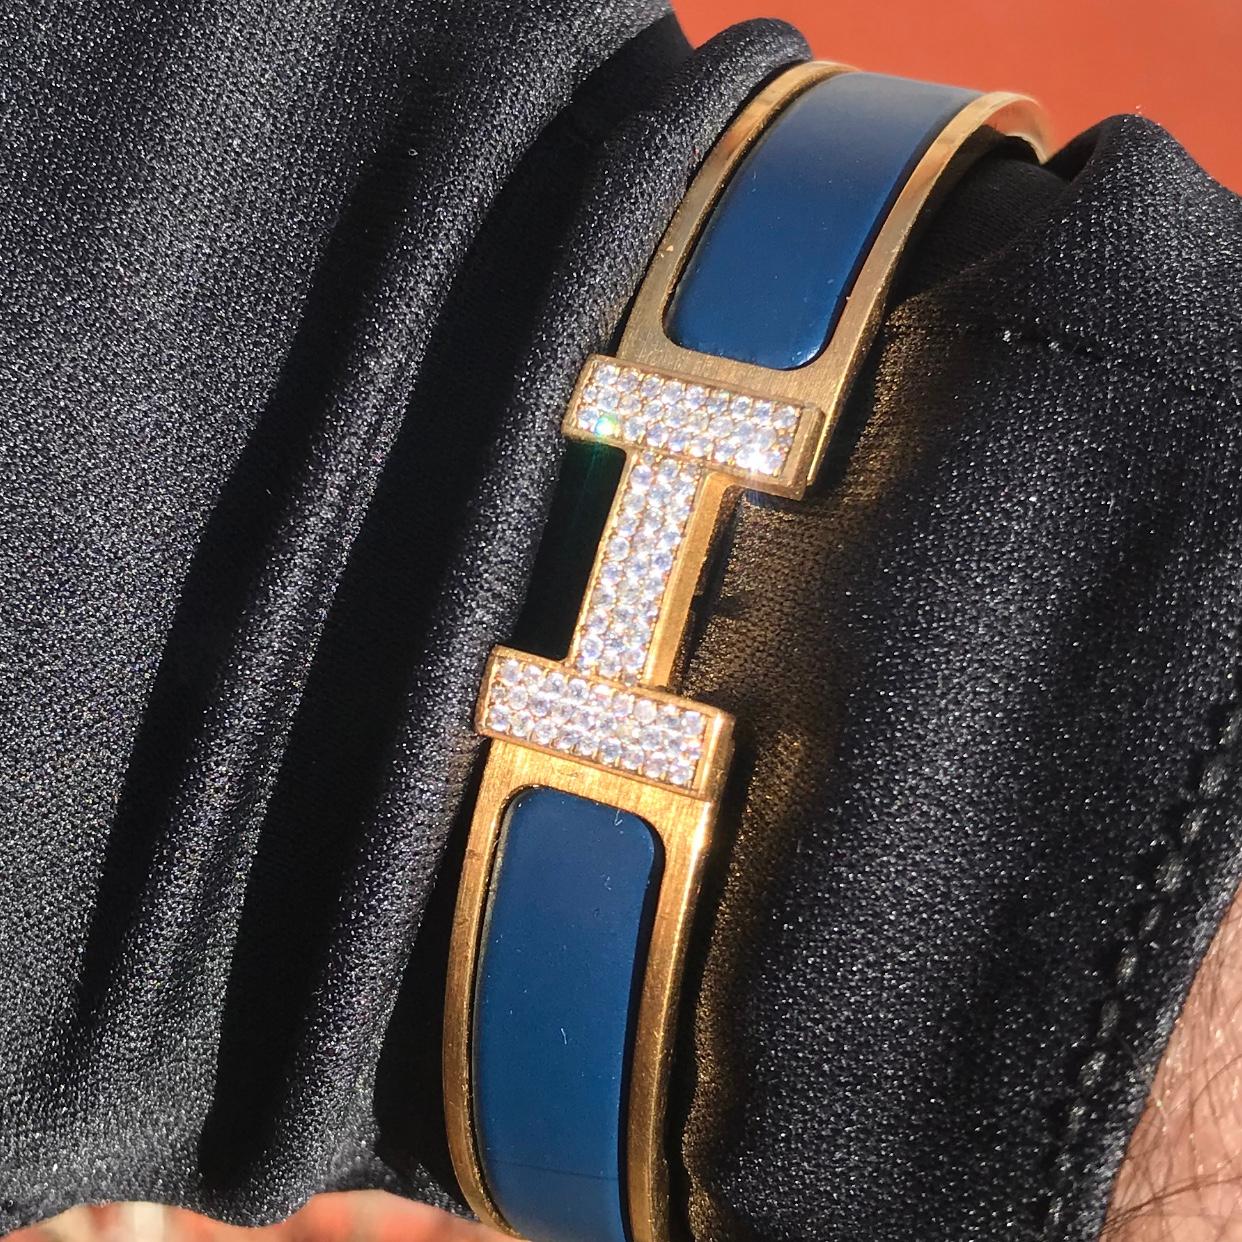 Bracelet Hermes Clic H avec diamants sur mesure, complet avec boîte d'origine.

Un bracelet Hermes Clic H taille GM en bleu et or est serti à la main d'environ 1,25 carats de diamants naturels VS-SI. Les diamants brillent de manière étonnante, même